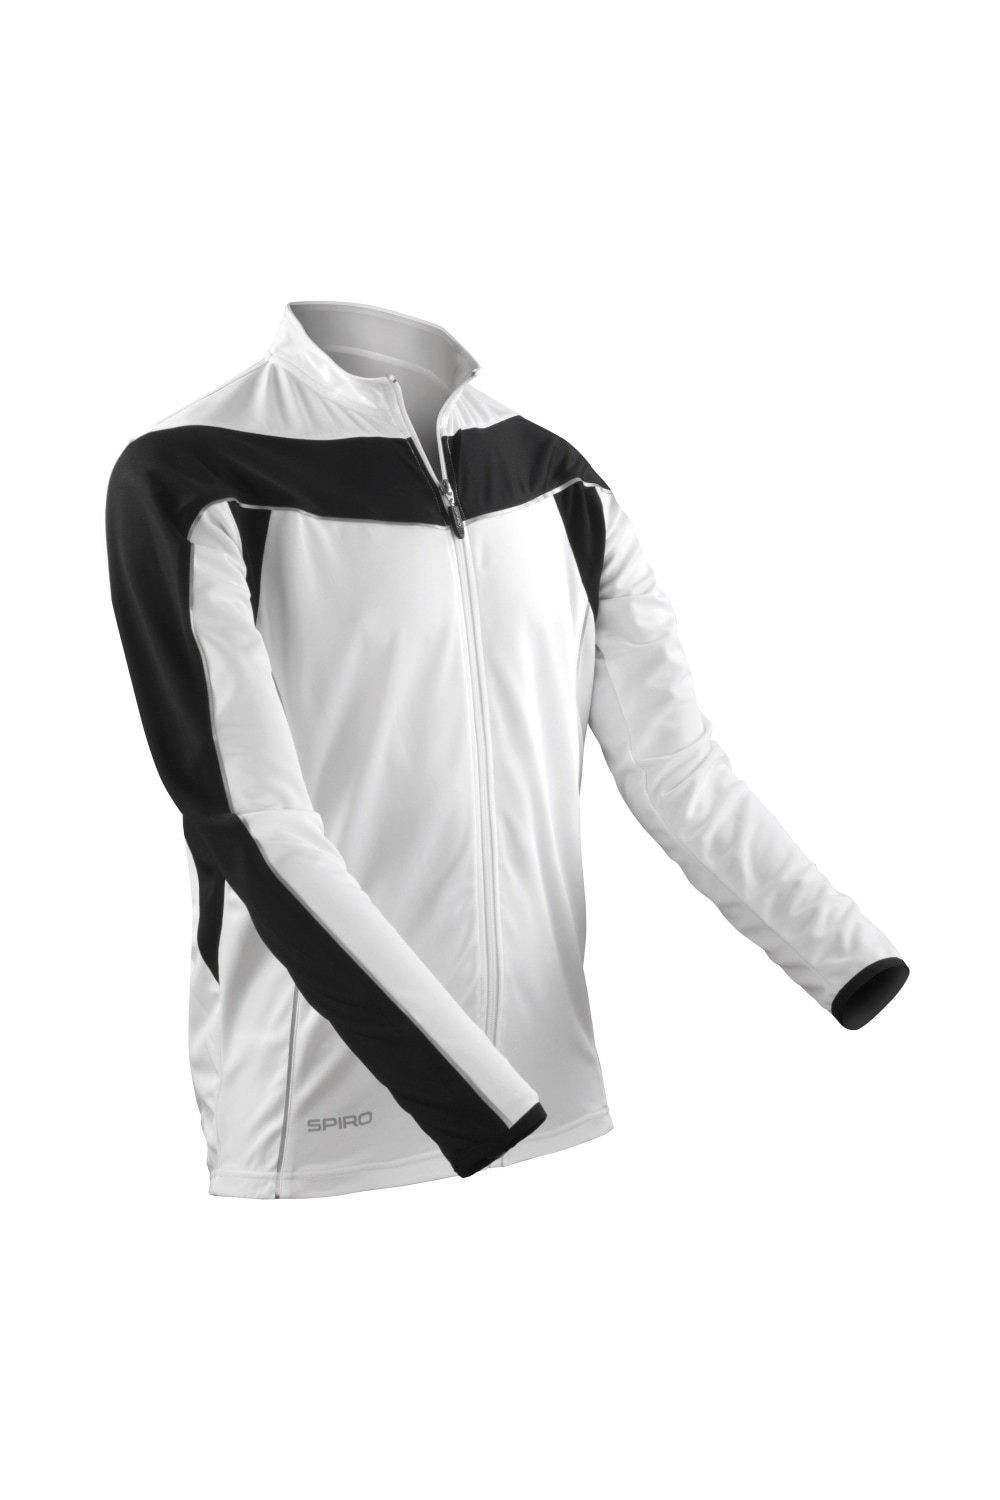 Одежда для велоспорта с длинным рукавом Performance Top Sports Cycling Spiro, белый комплект для велоспорта raudax 2021 с длинным рукавом дышащая одежда для горных велосипедов одежда для велоспорта летняя одежда для триатлон